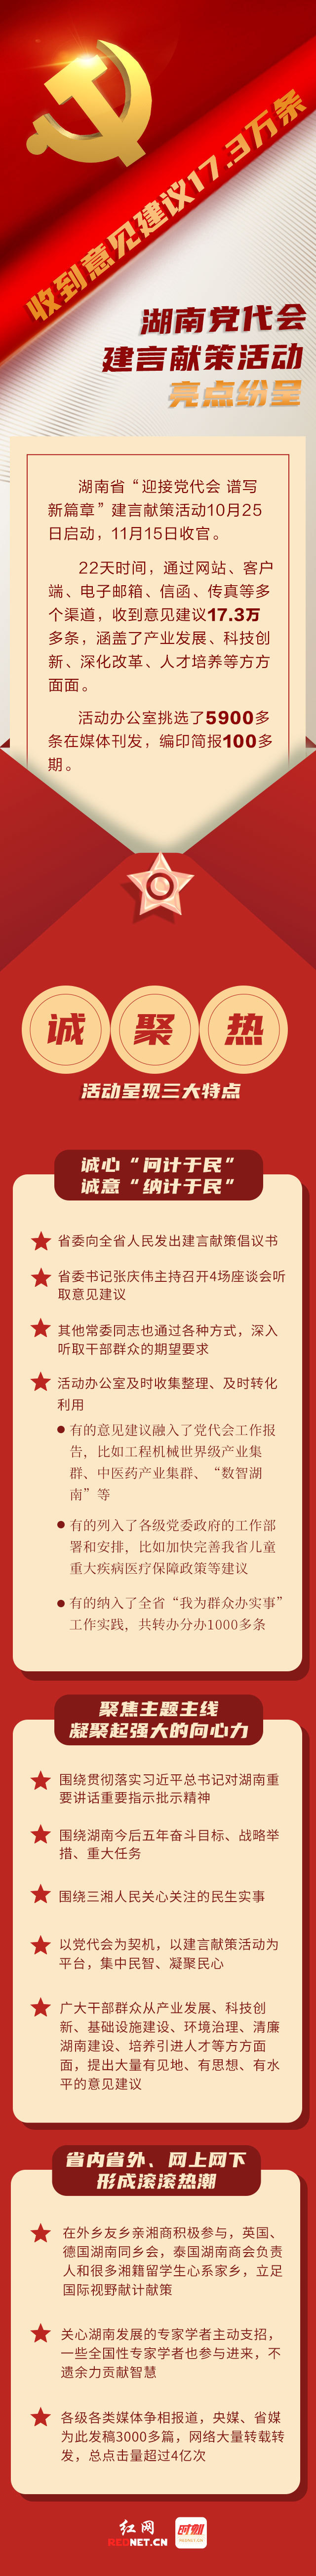 图解丨收到意见建议17.3万条 湖南党代会建言献策活动亮点纷呈